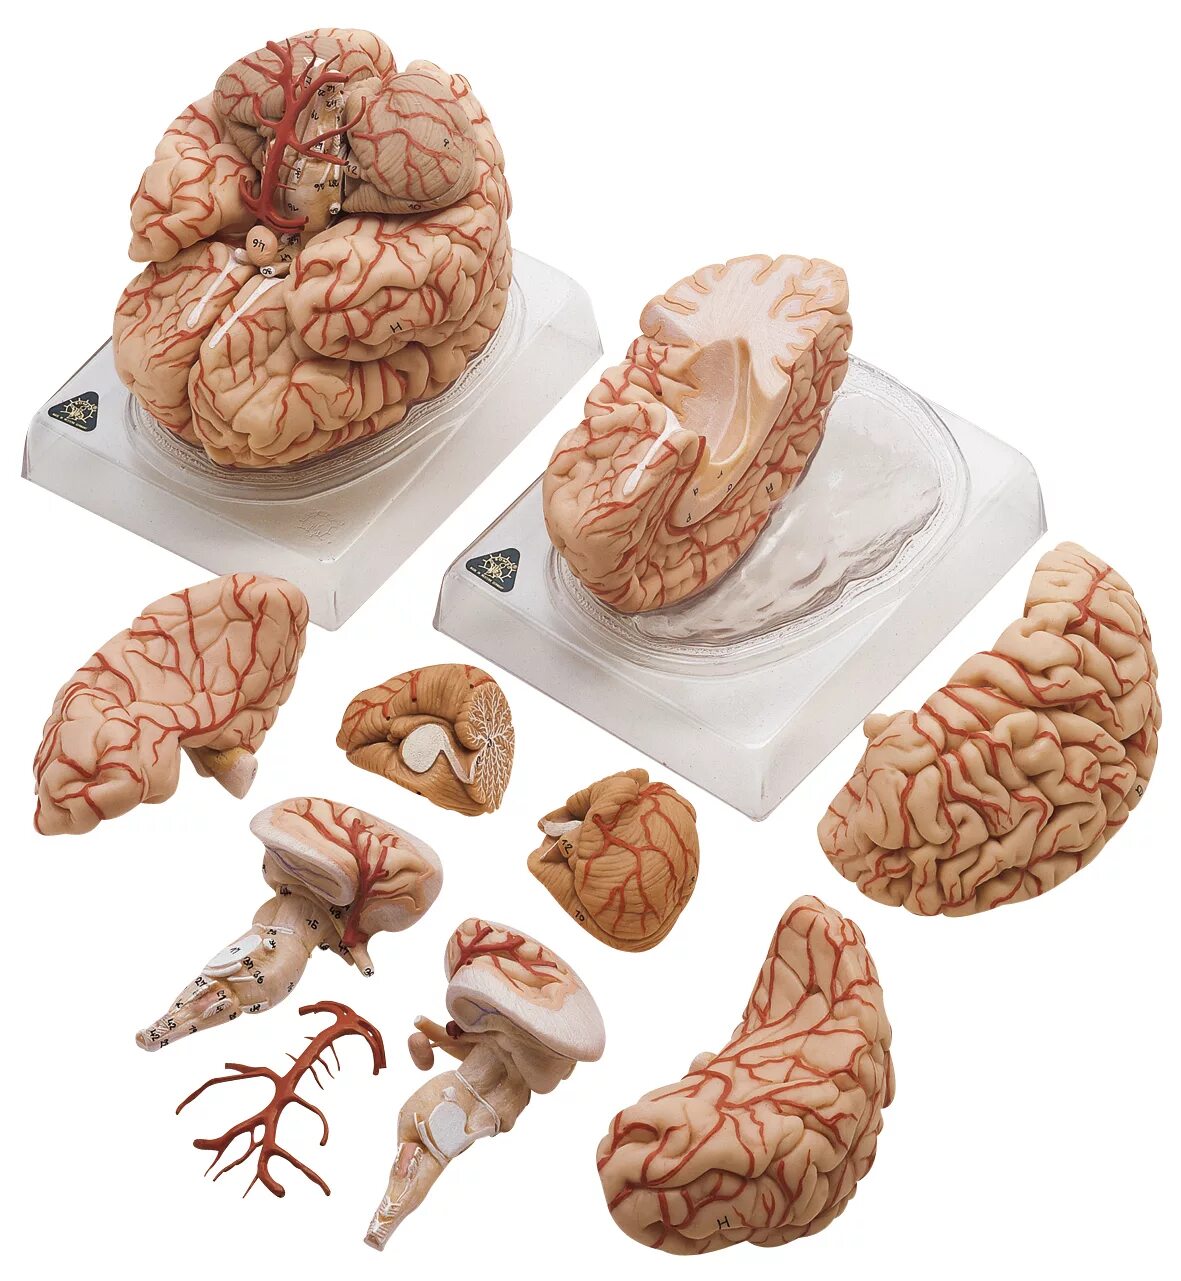 Анатомическая модель головного мозга. Муляж мозга. Человеческий мозг в разрезе.